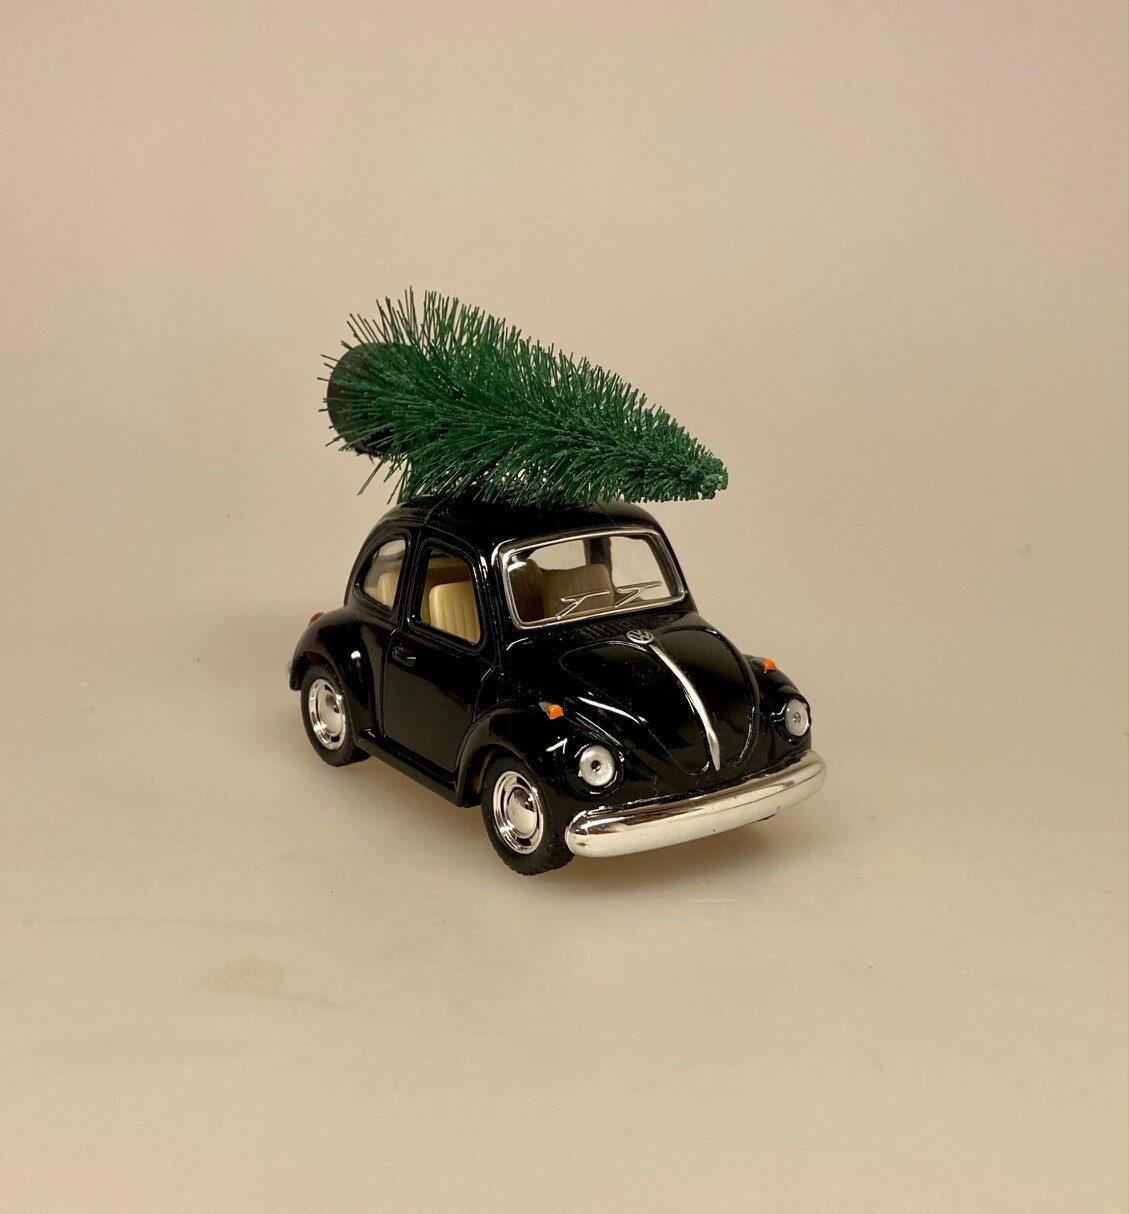 VW Folkevogn Mini Bobbel med Juletræ - Sort, julebil, grantræ, juletræ, på taget, driving, home, 4, for, xmas, christmas, julepynt, sjov, fin, modelbil, bobbel, boble, folkevogn, volkswagen, metal, bil, biti, ribe